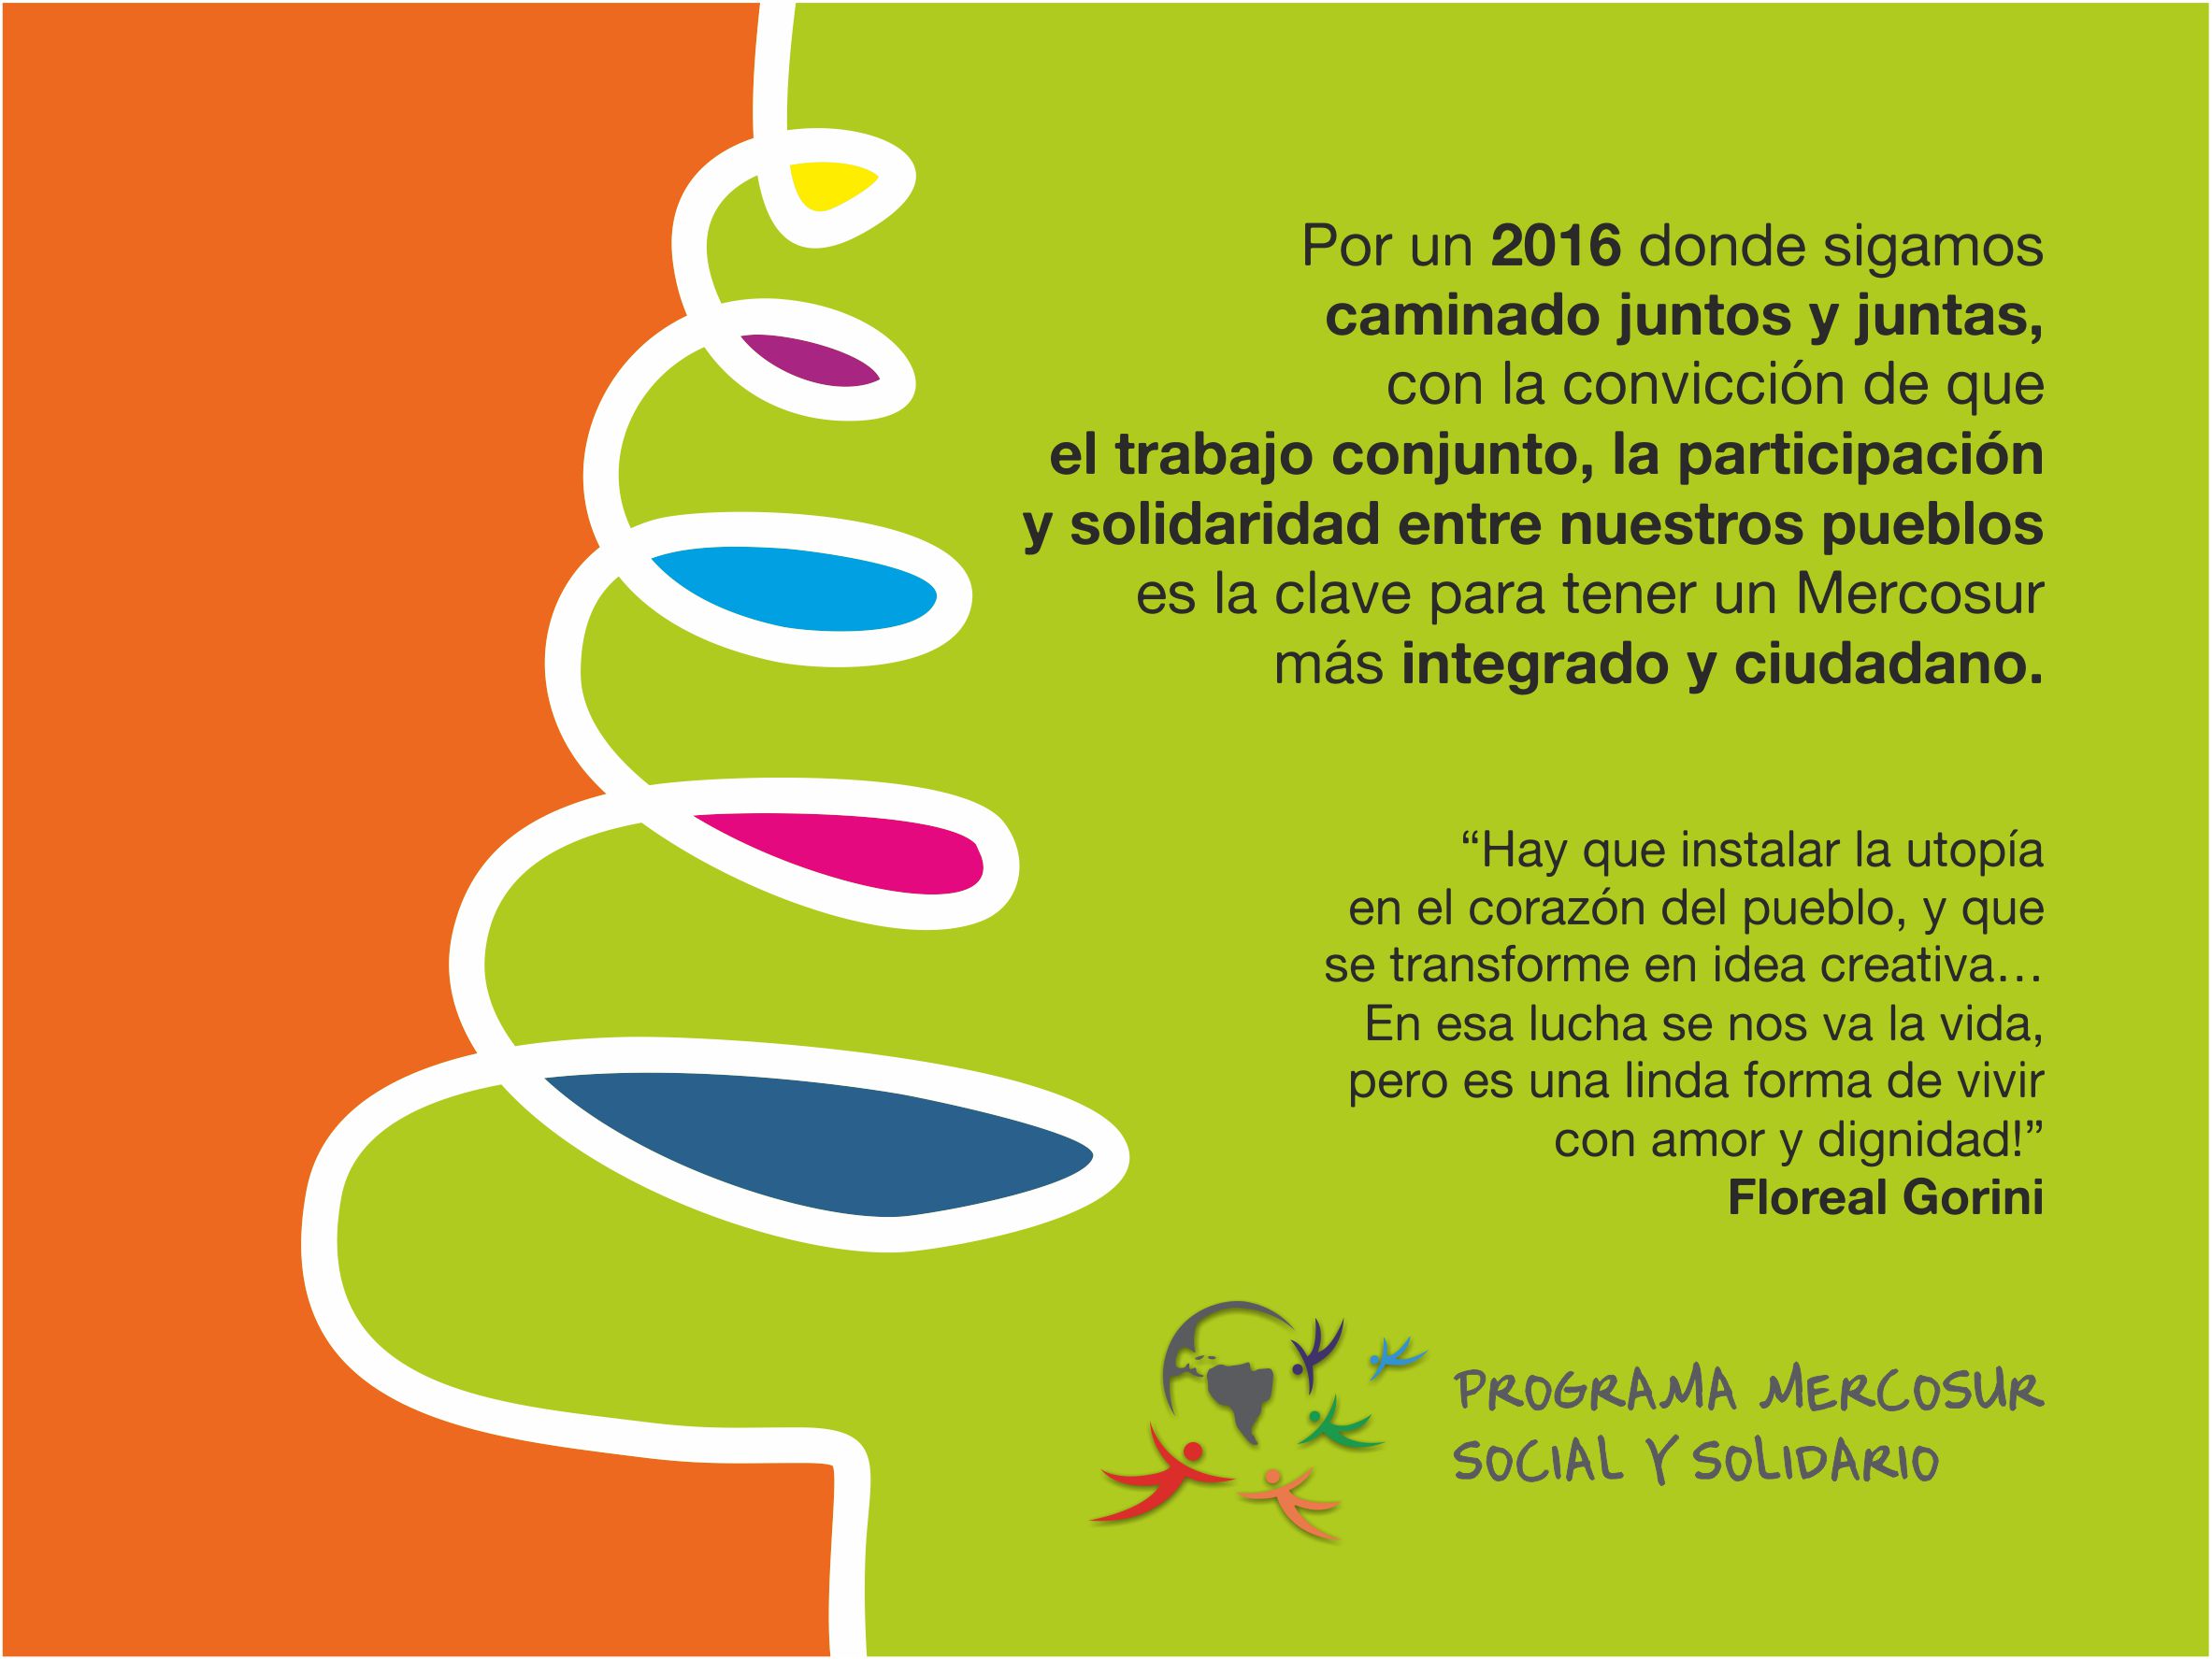 ¡El Programa Mercosur Social y Solidario les desea Felices Fiestas!